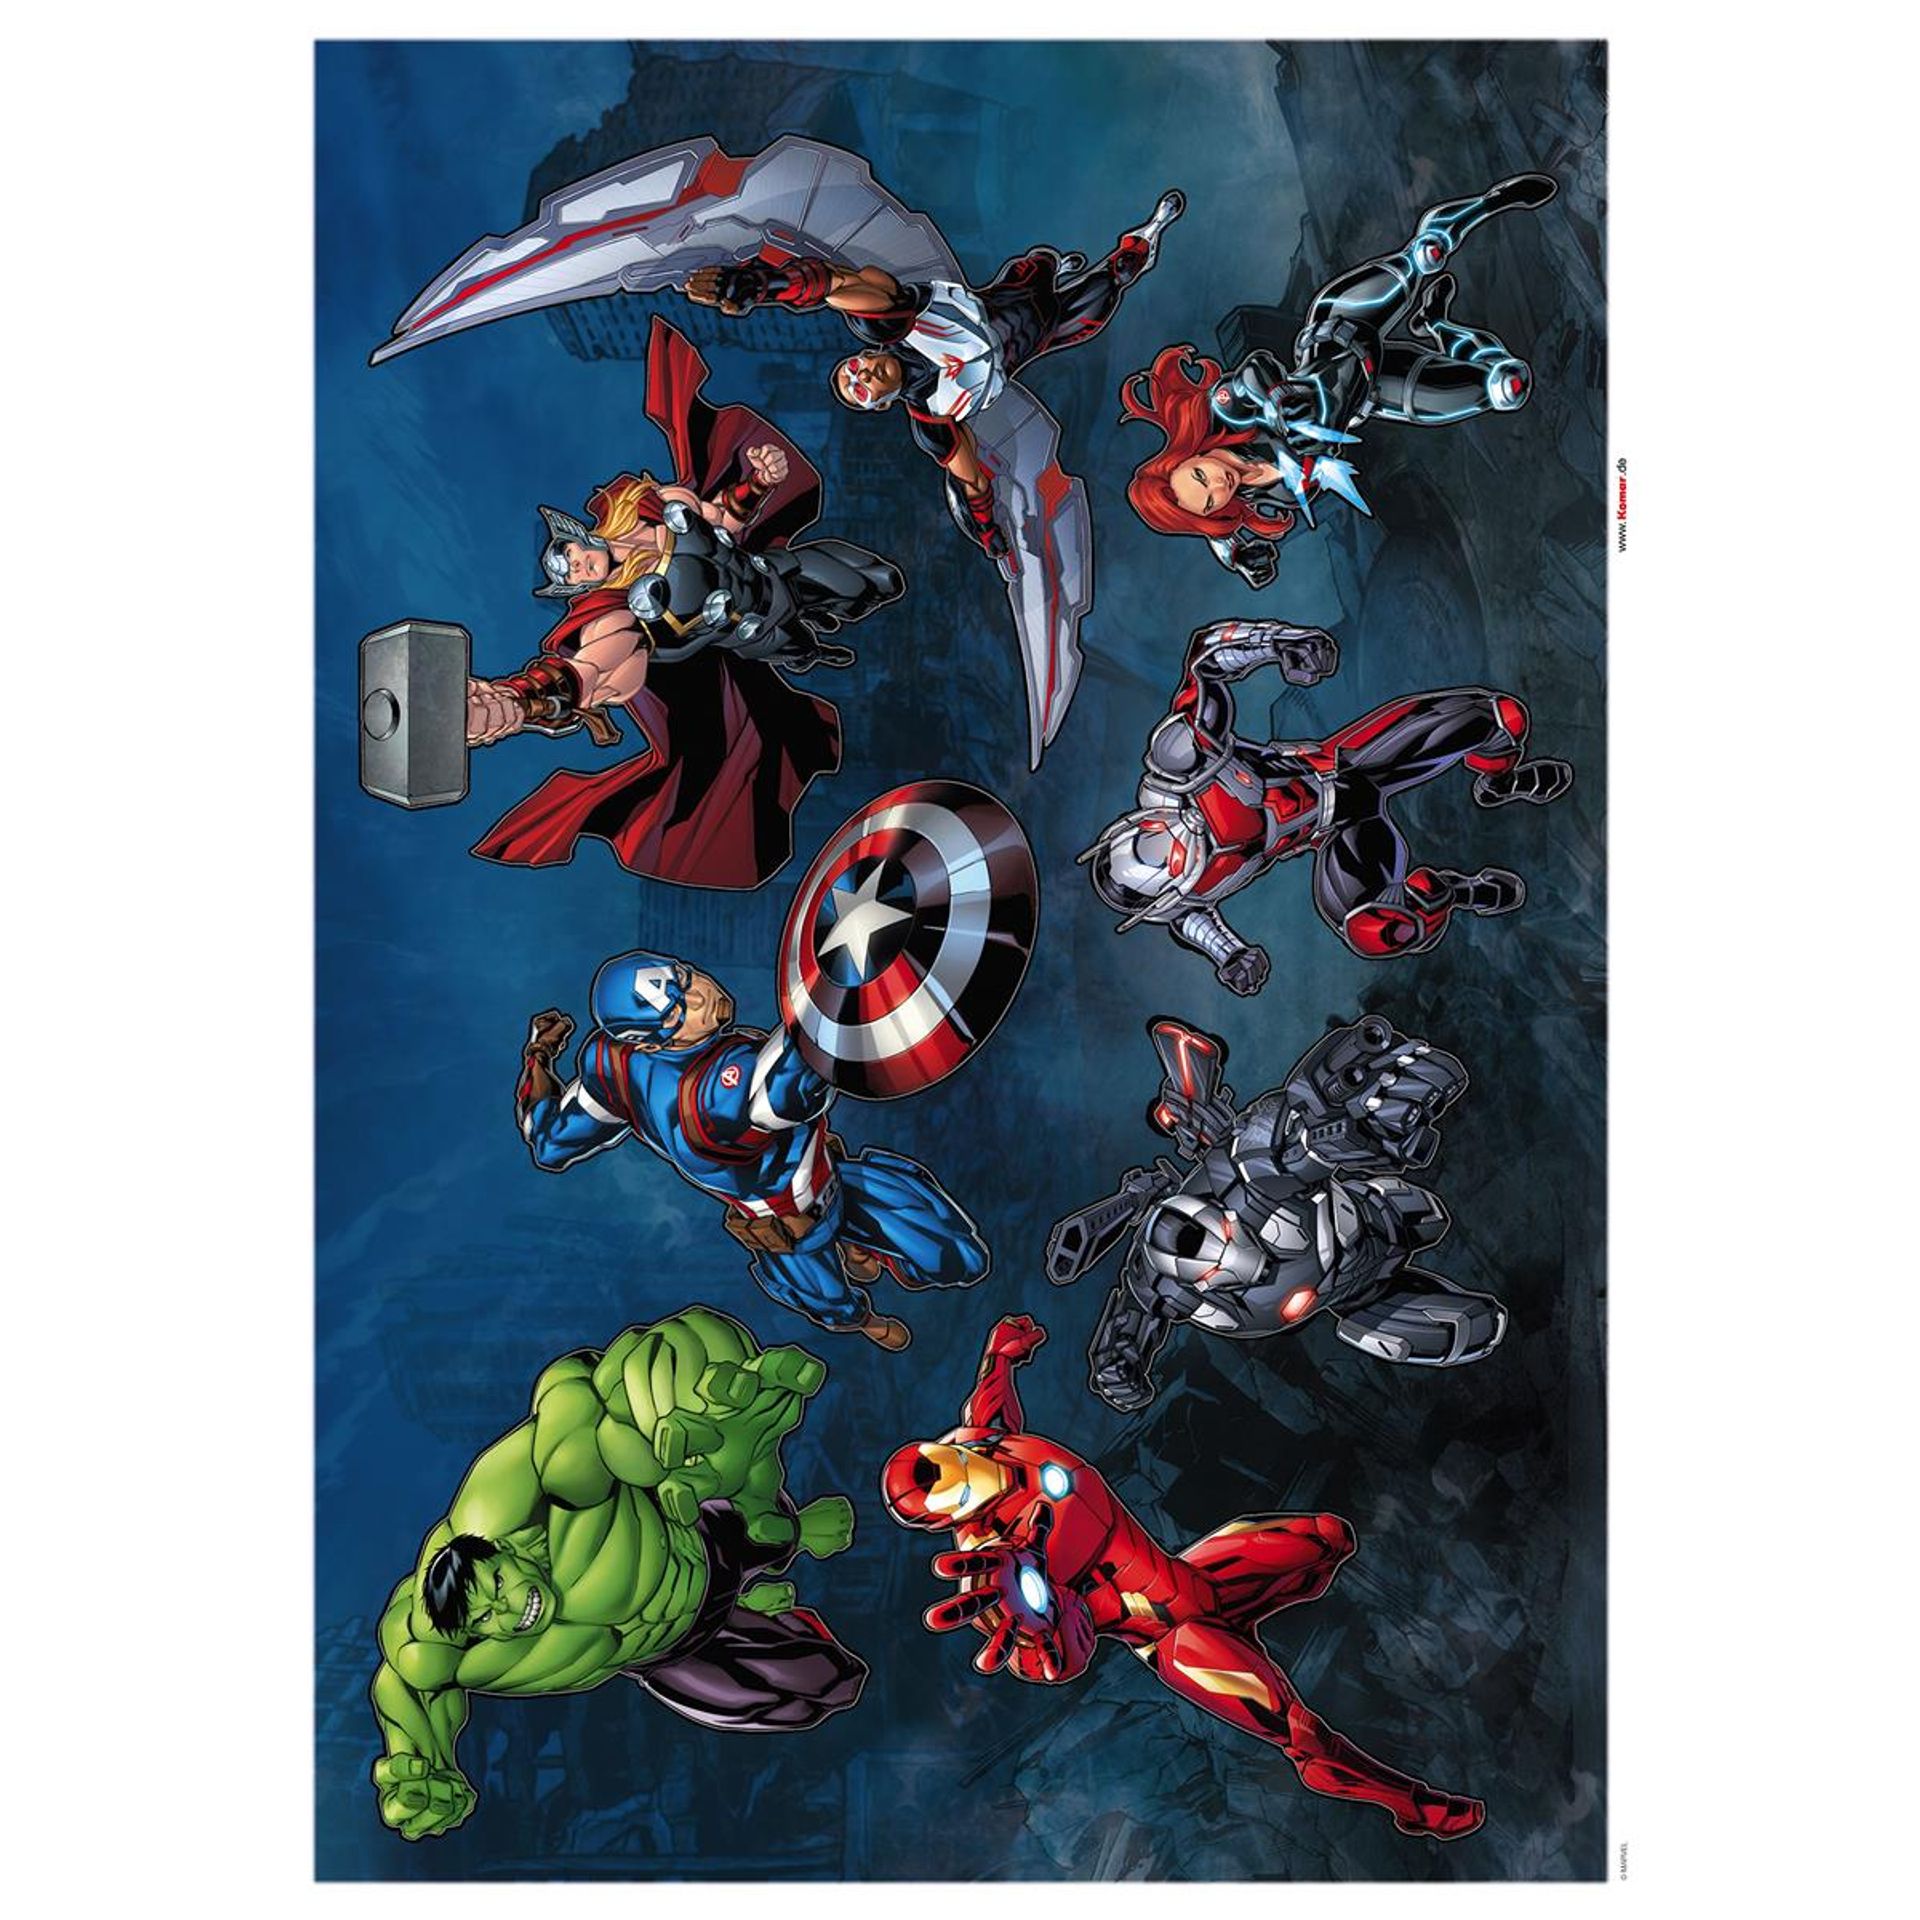 Wandtattoo - Avengers Crew - Größe 50 x 70 cm